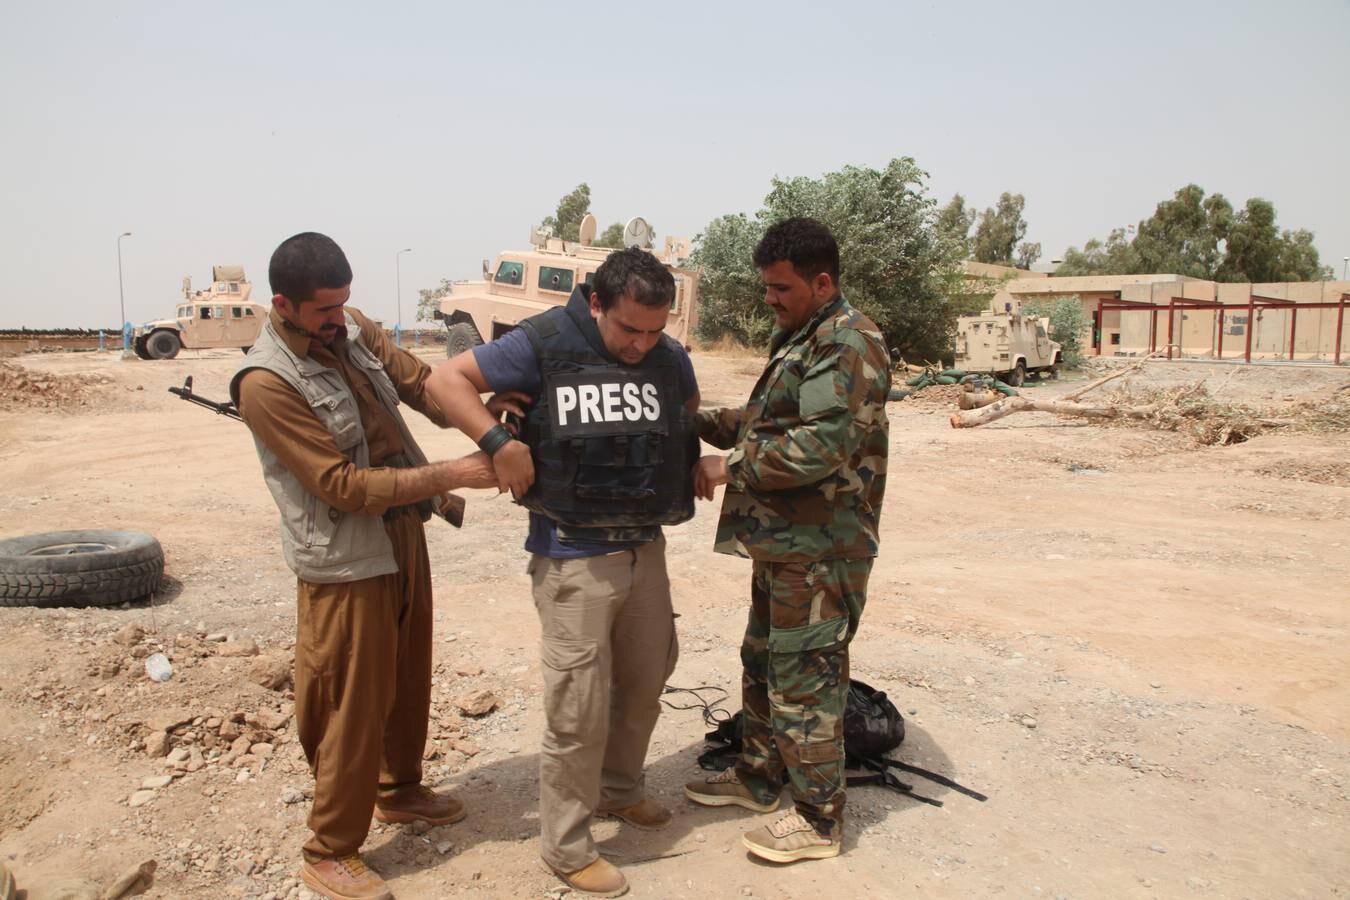  'Empotrado'. Dos 'peshmergas', combatientes kurdos armados, ayudan a Ángel a colocarse el chaleco antibalas antes de acercarse a la primera línea de fuego en Irak. :: HOY